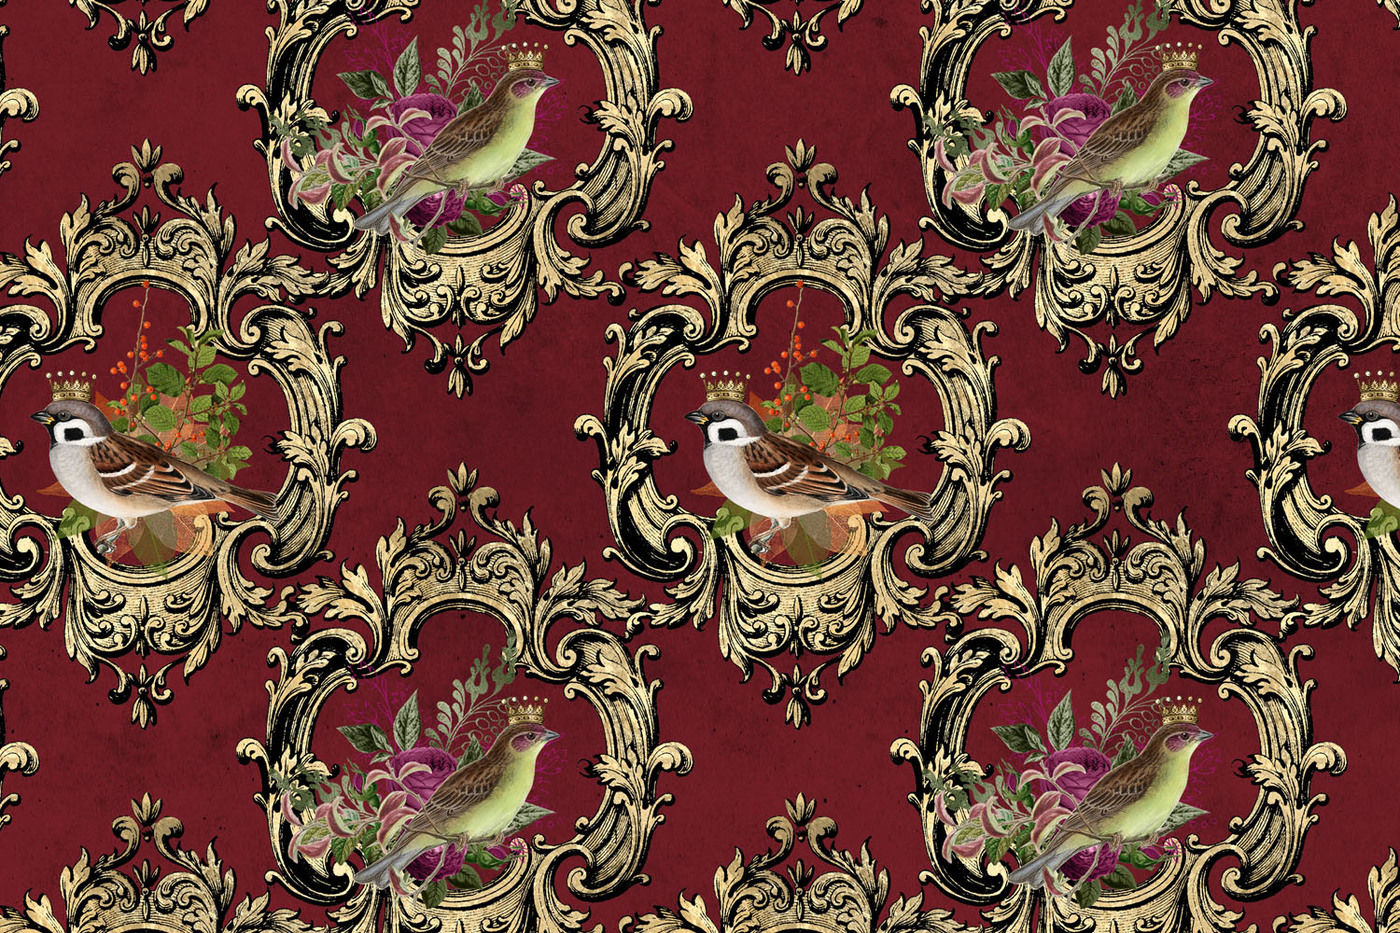 Baroque Royal Birds Digital Paper By Digital Curio Thehungryjpeg Com